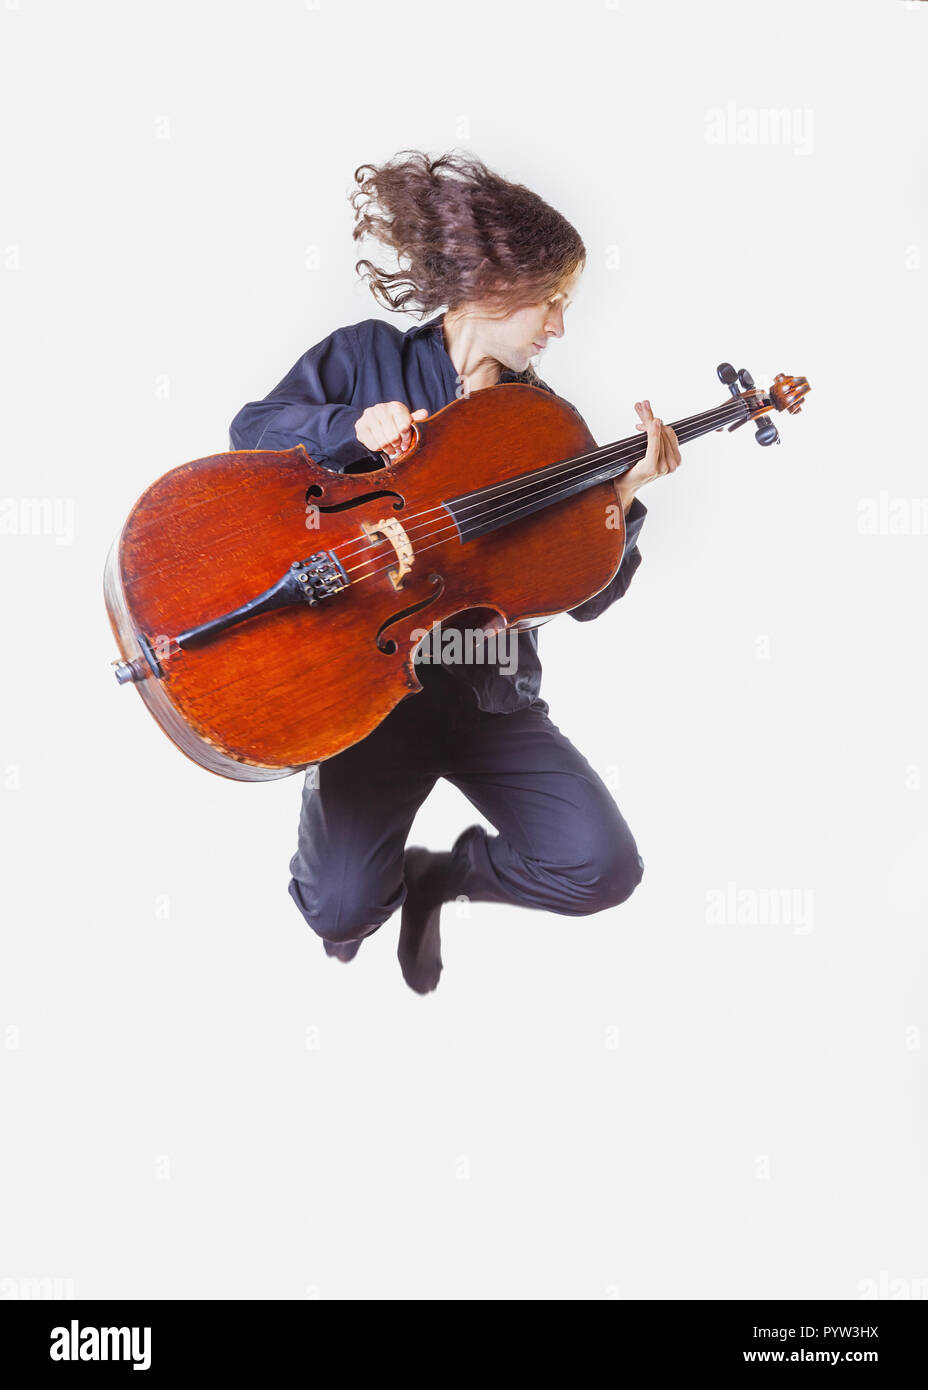 Il violoncellista con un violoncello nelle sue mani in un salto su sfondo bianco Foto Stock